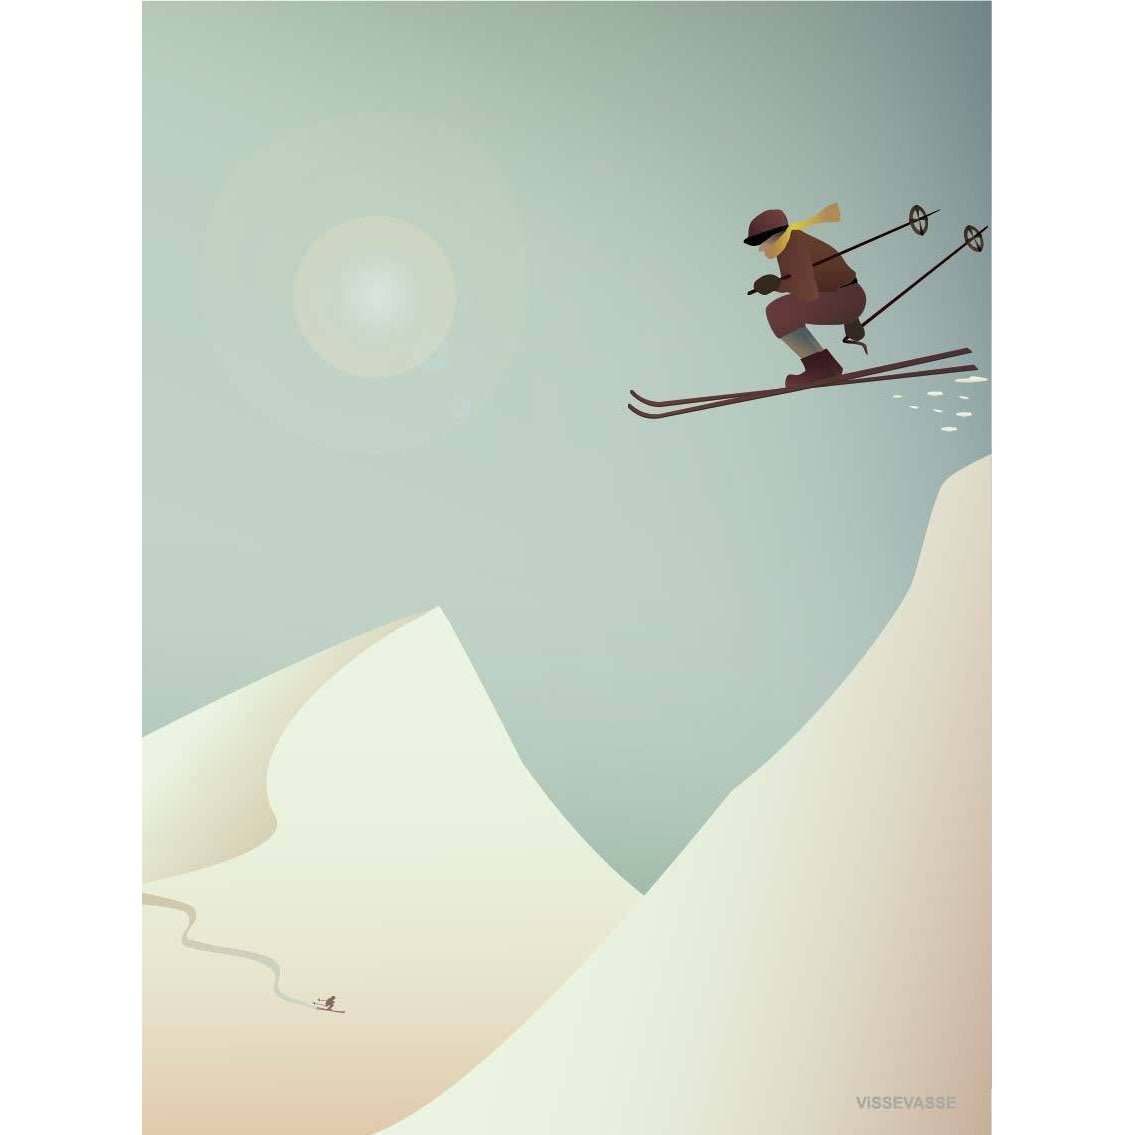 Vissevasse滑雪海报，15 x21 cm